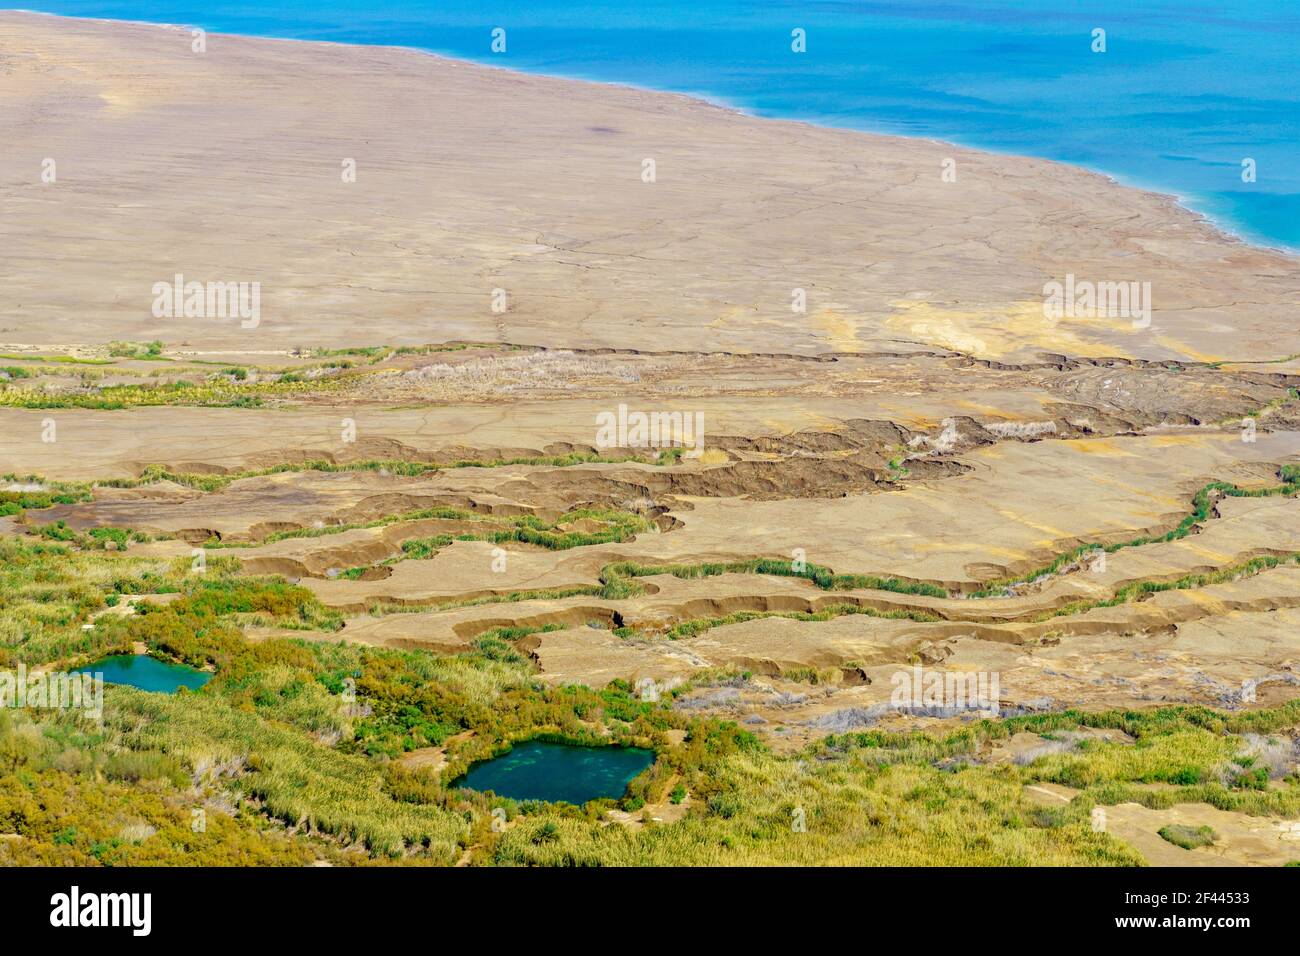 Vista della parte settentrionale del Mar Morto e della riserva naturale di Einot Tzukim (Ein Feshkha), Israele meridionale Foto Stock